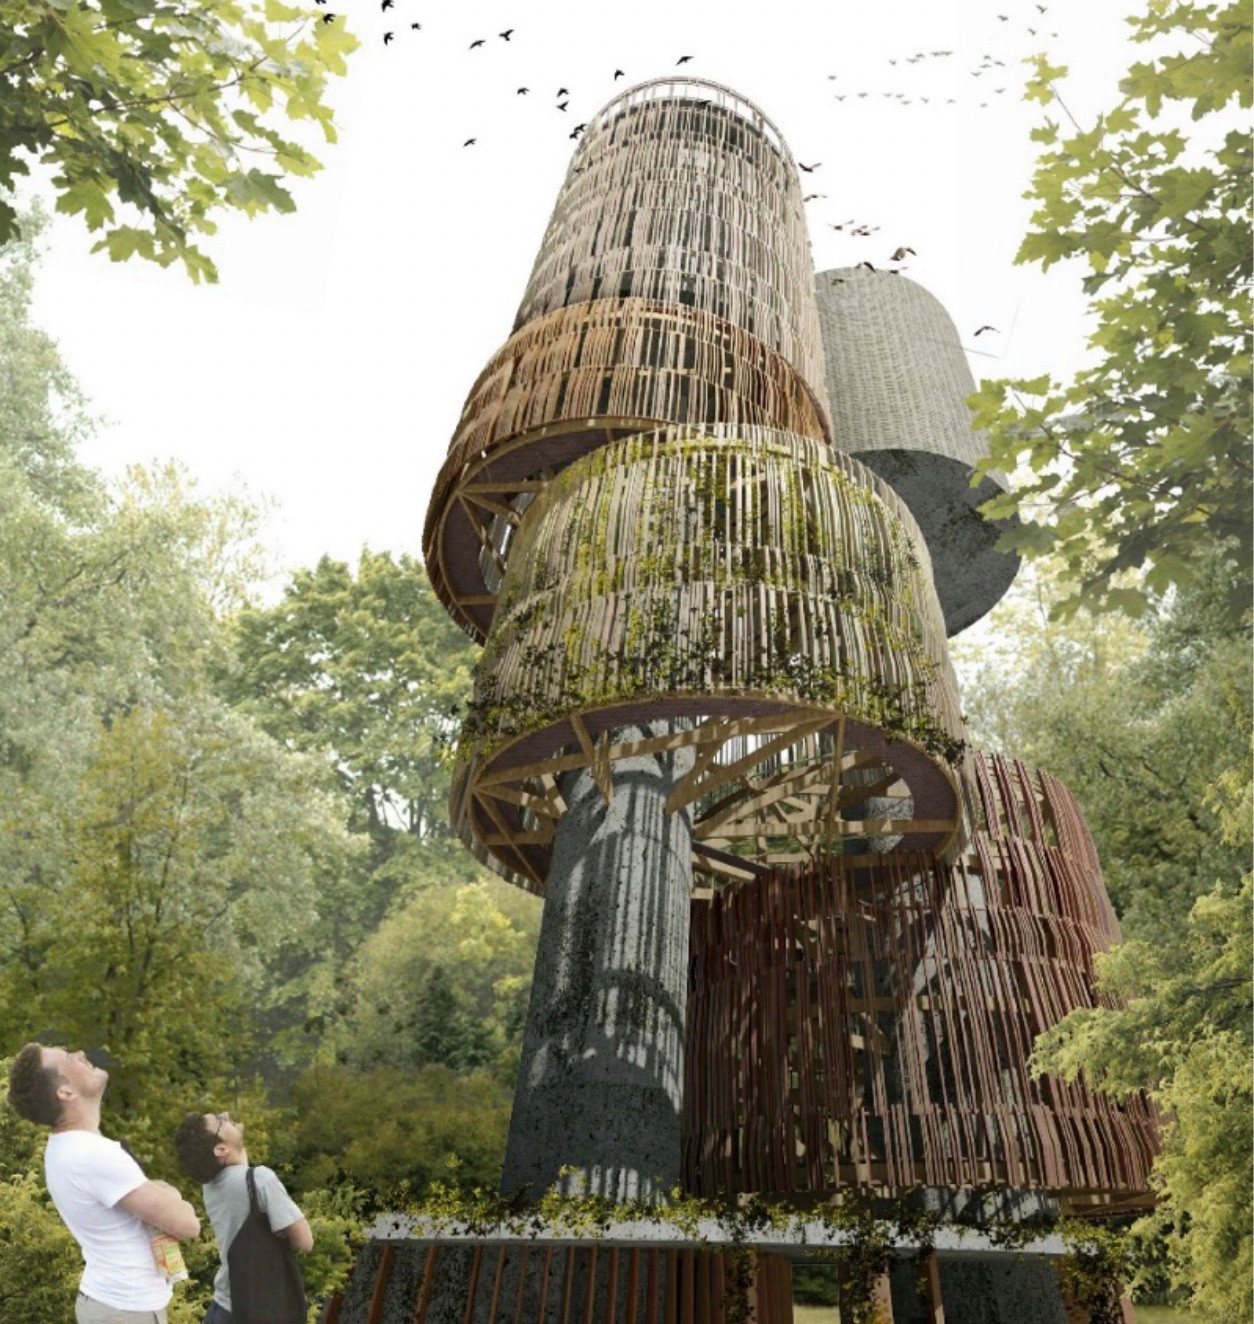 Le futur château d’eau aura une partie de ses façades recouverte de bois. (Illustration: Temperaturas Extremas Arquitectos)